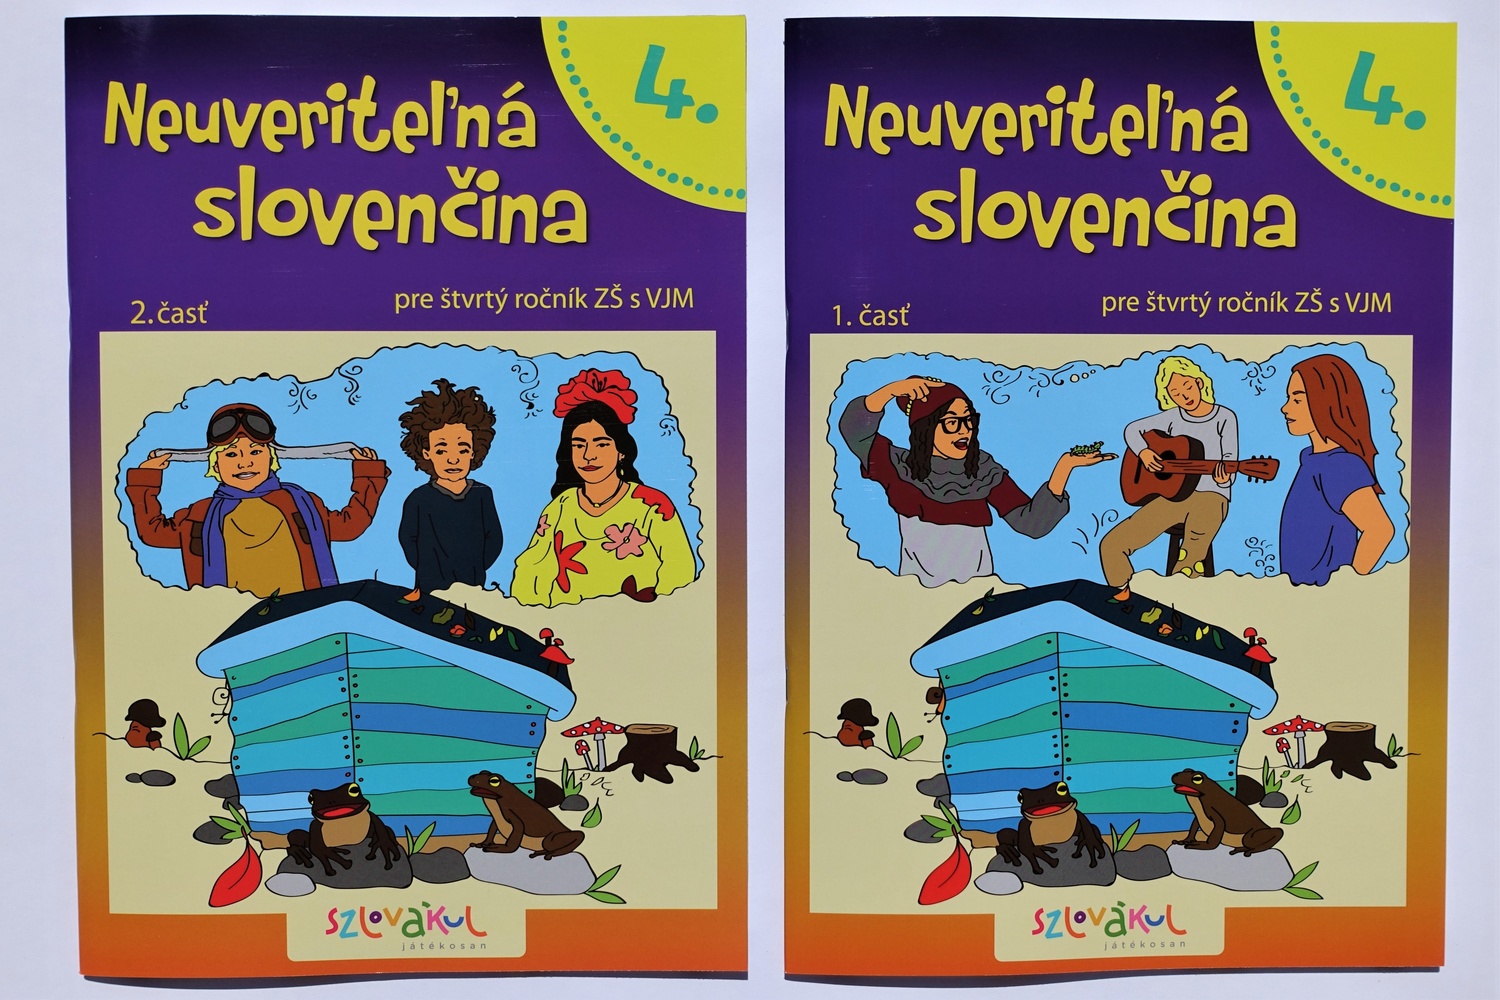 Neuveriteľná slovenčina tankönyvek